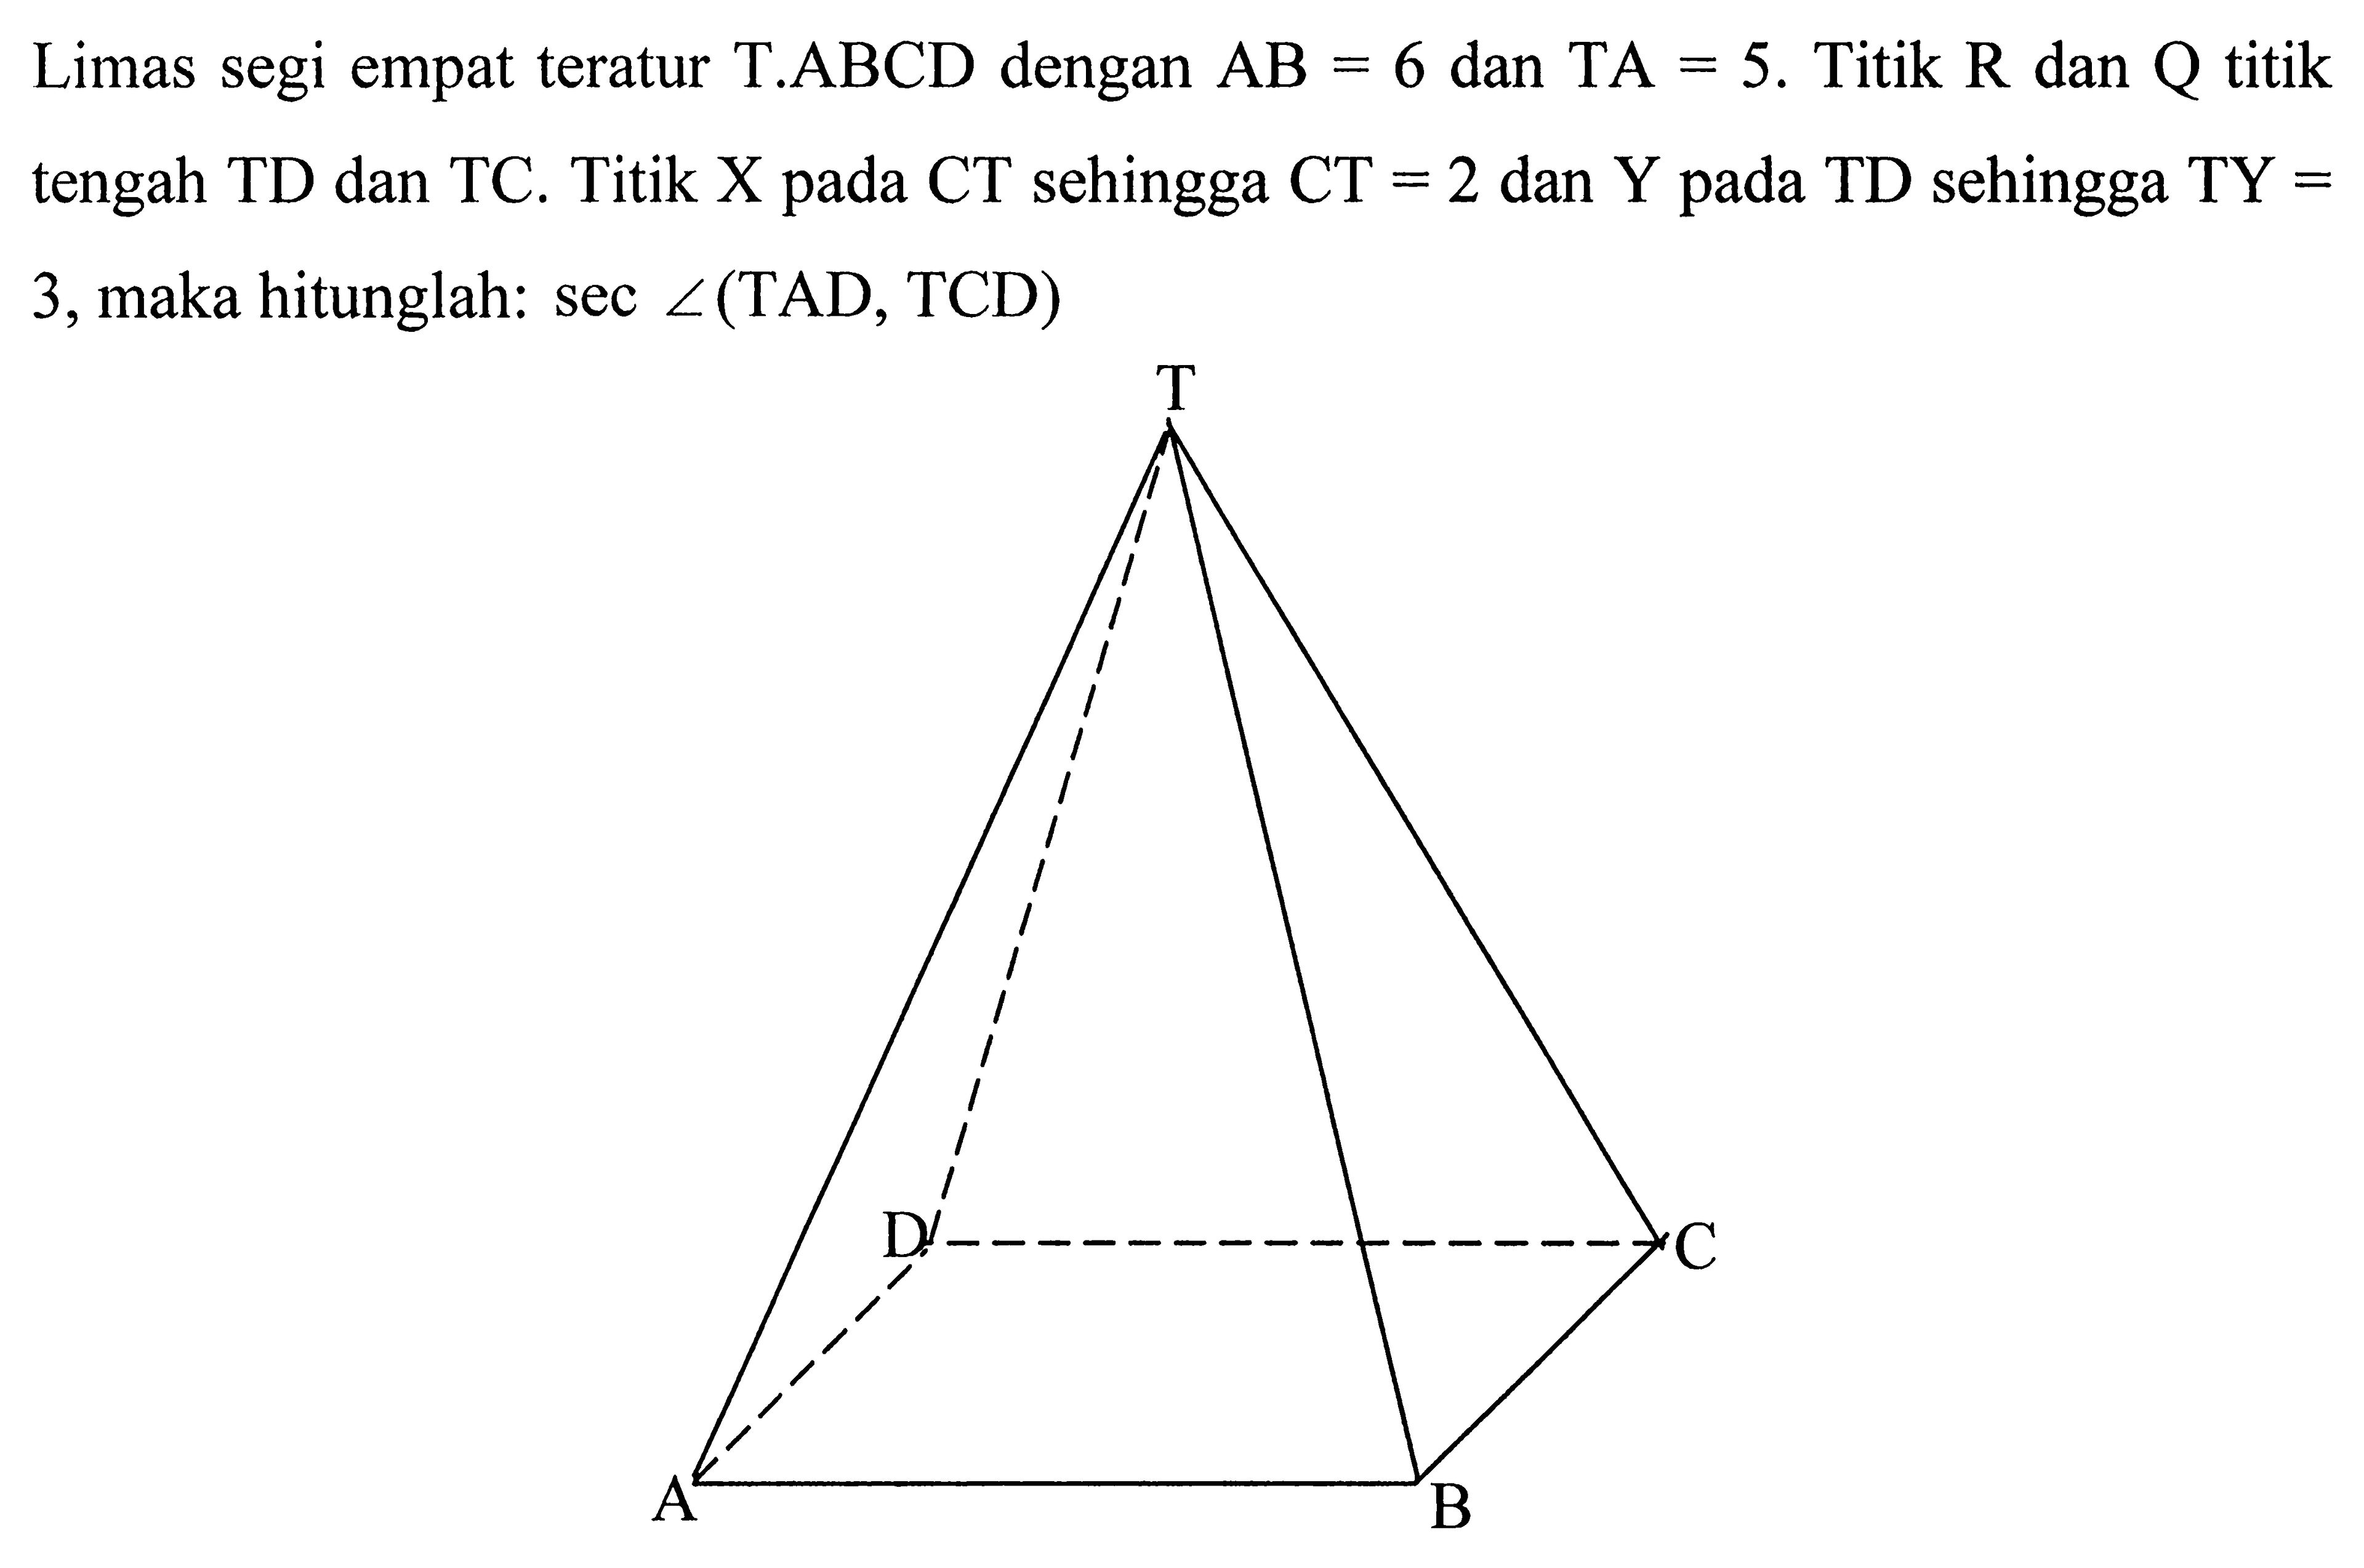 Limas segi empat teratur T.ABCD dengan AB=6 dan TA=5. Titik R dan Q titik tengah TD dan TC. Titik X pada CT sehingga CT=2 dan Y pada TD sehingga TY=3, maka hitunglah: sec <(TAD,TCD) T D C A B